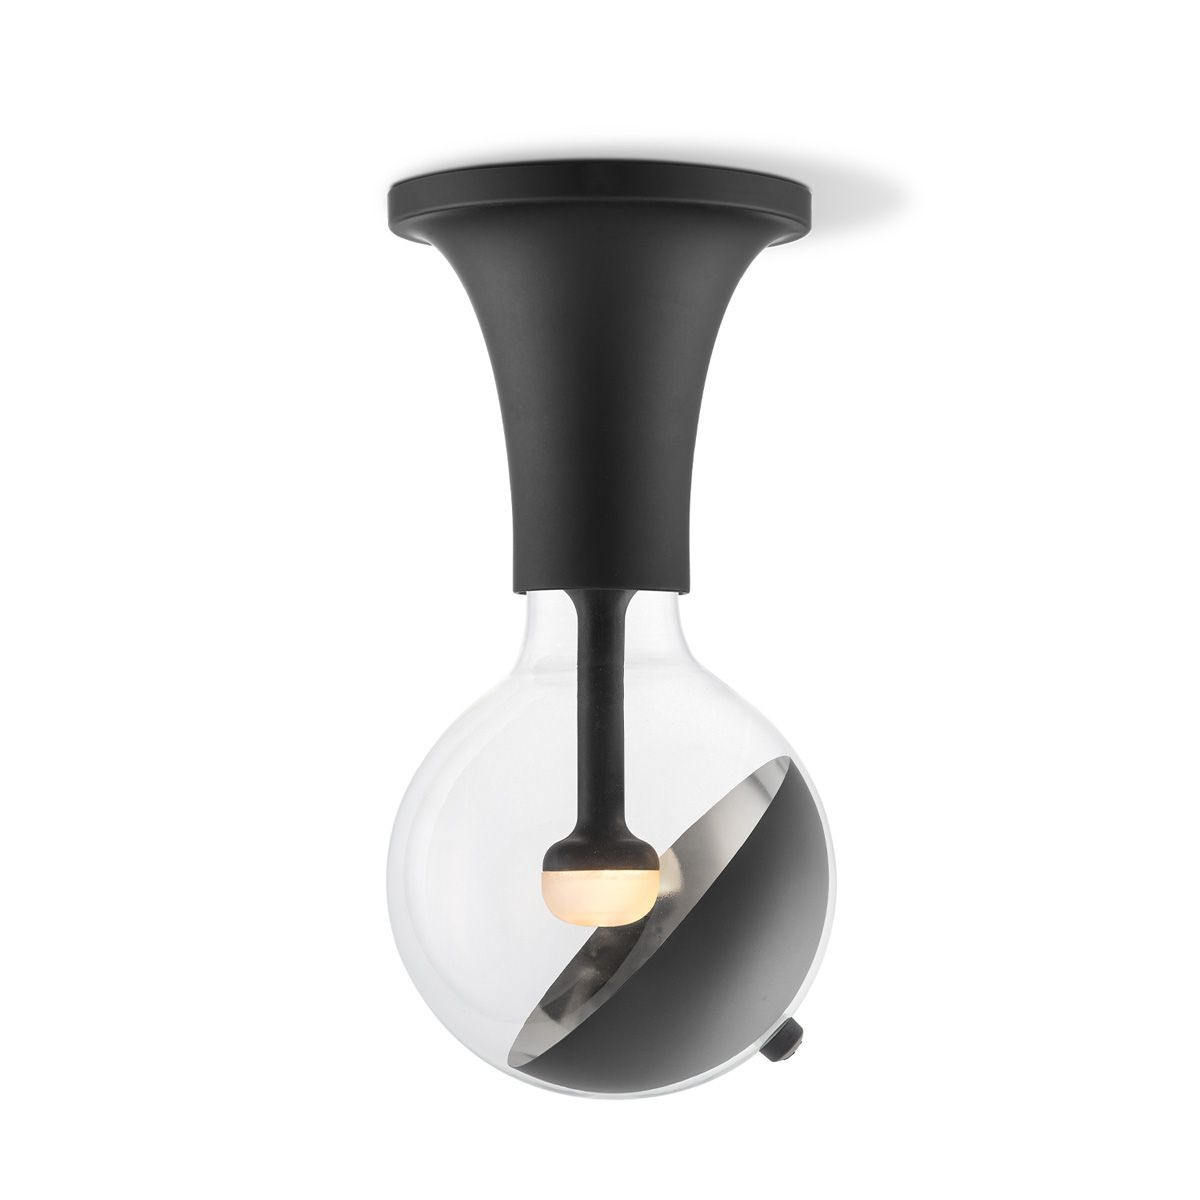 Move Me plafondlamp Horn - zwart / Sphere 5,5W - zwart zilver